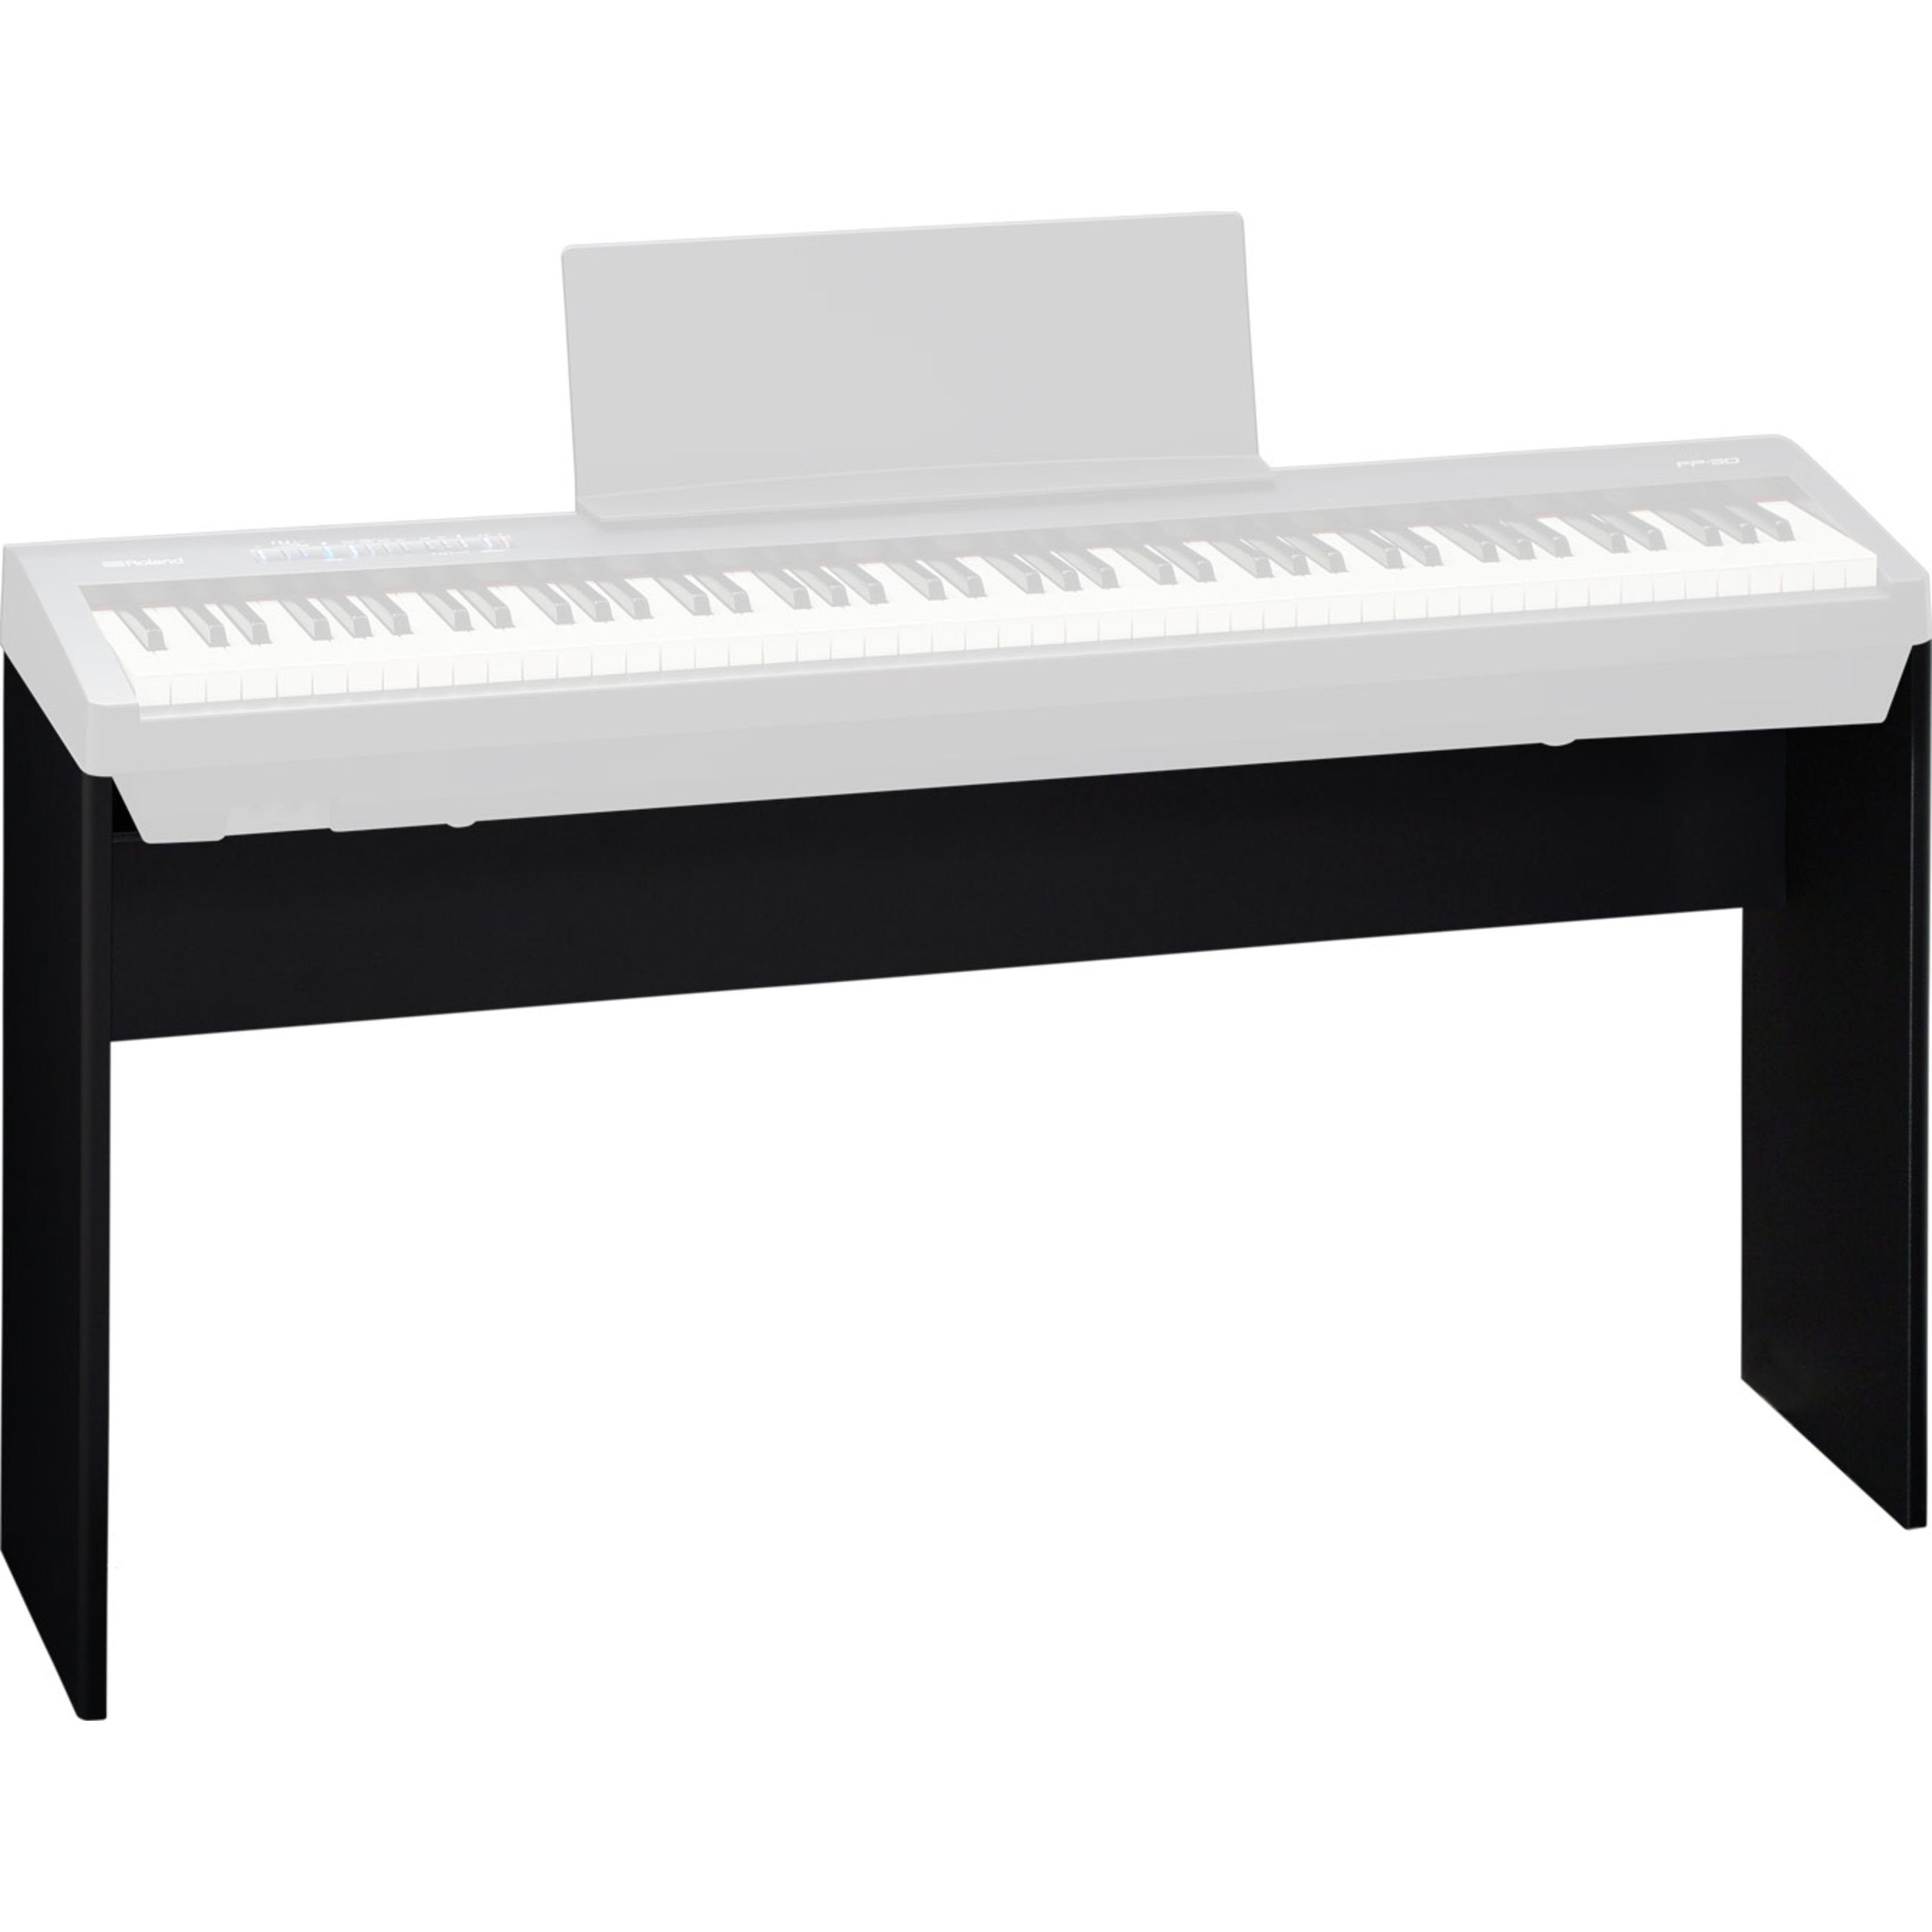 Roland Pianoständer, (KSC-70 BK, Stative für Tasteninstrumente, Piano-Stative), KSC-70 BK - Keyboardständer